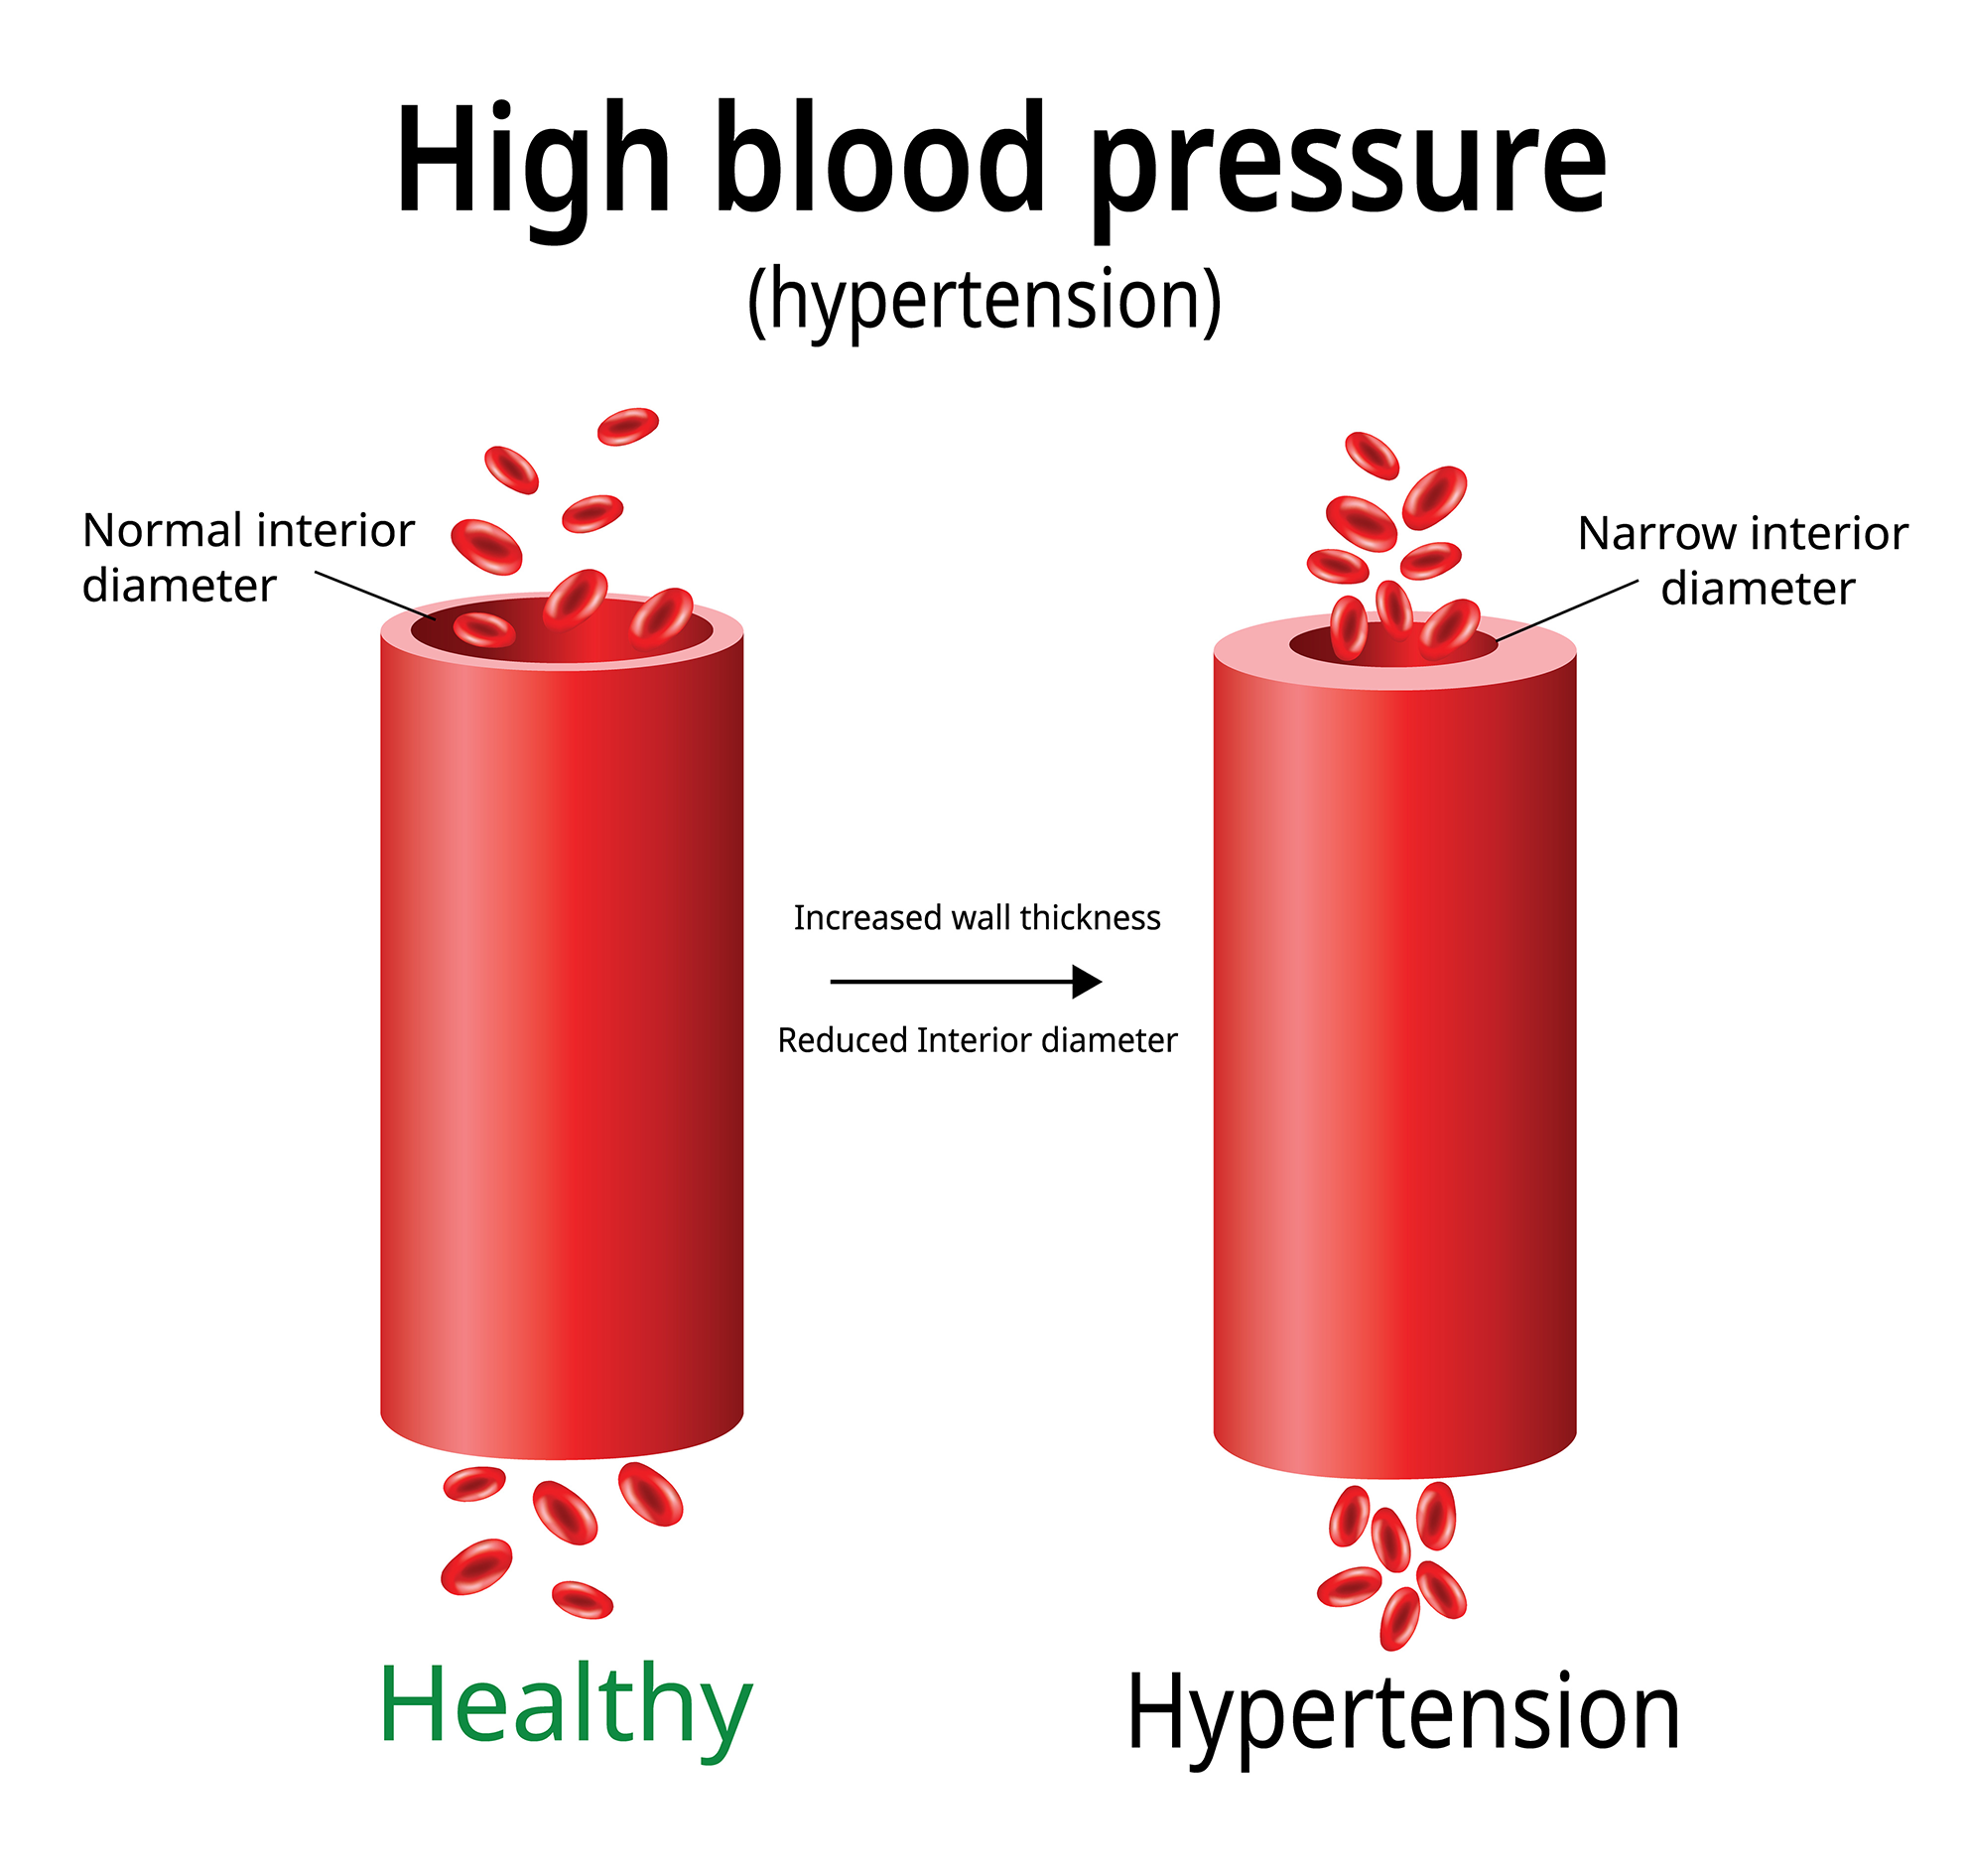 https://drraghu.com/wp-content/uploads/2021/02/high-blood-pressure-hypertension.png